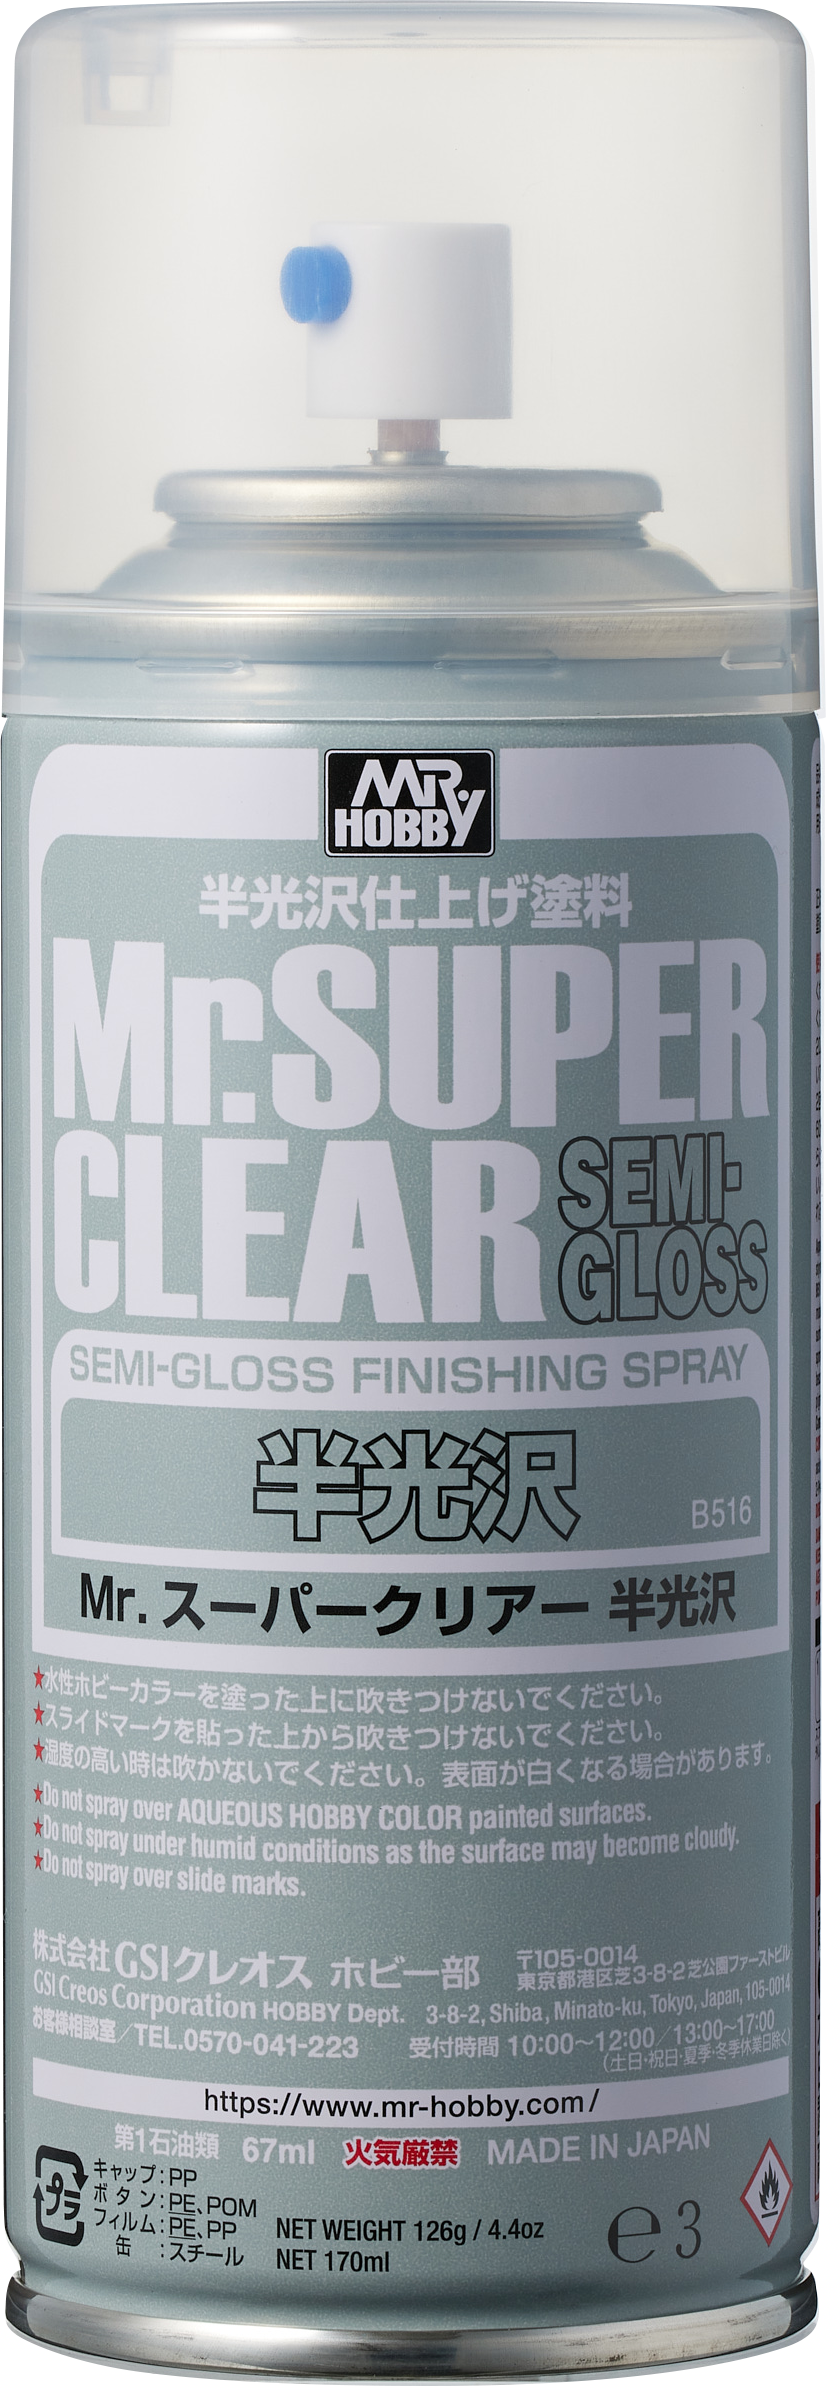 B516: Mr Super Clear Semi-Gloss